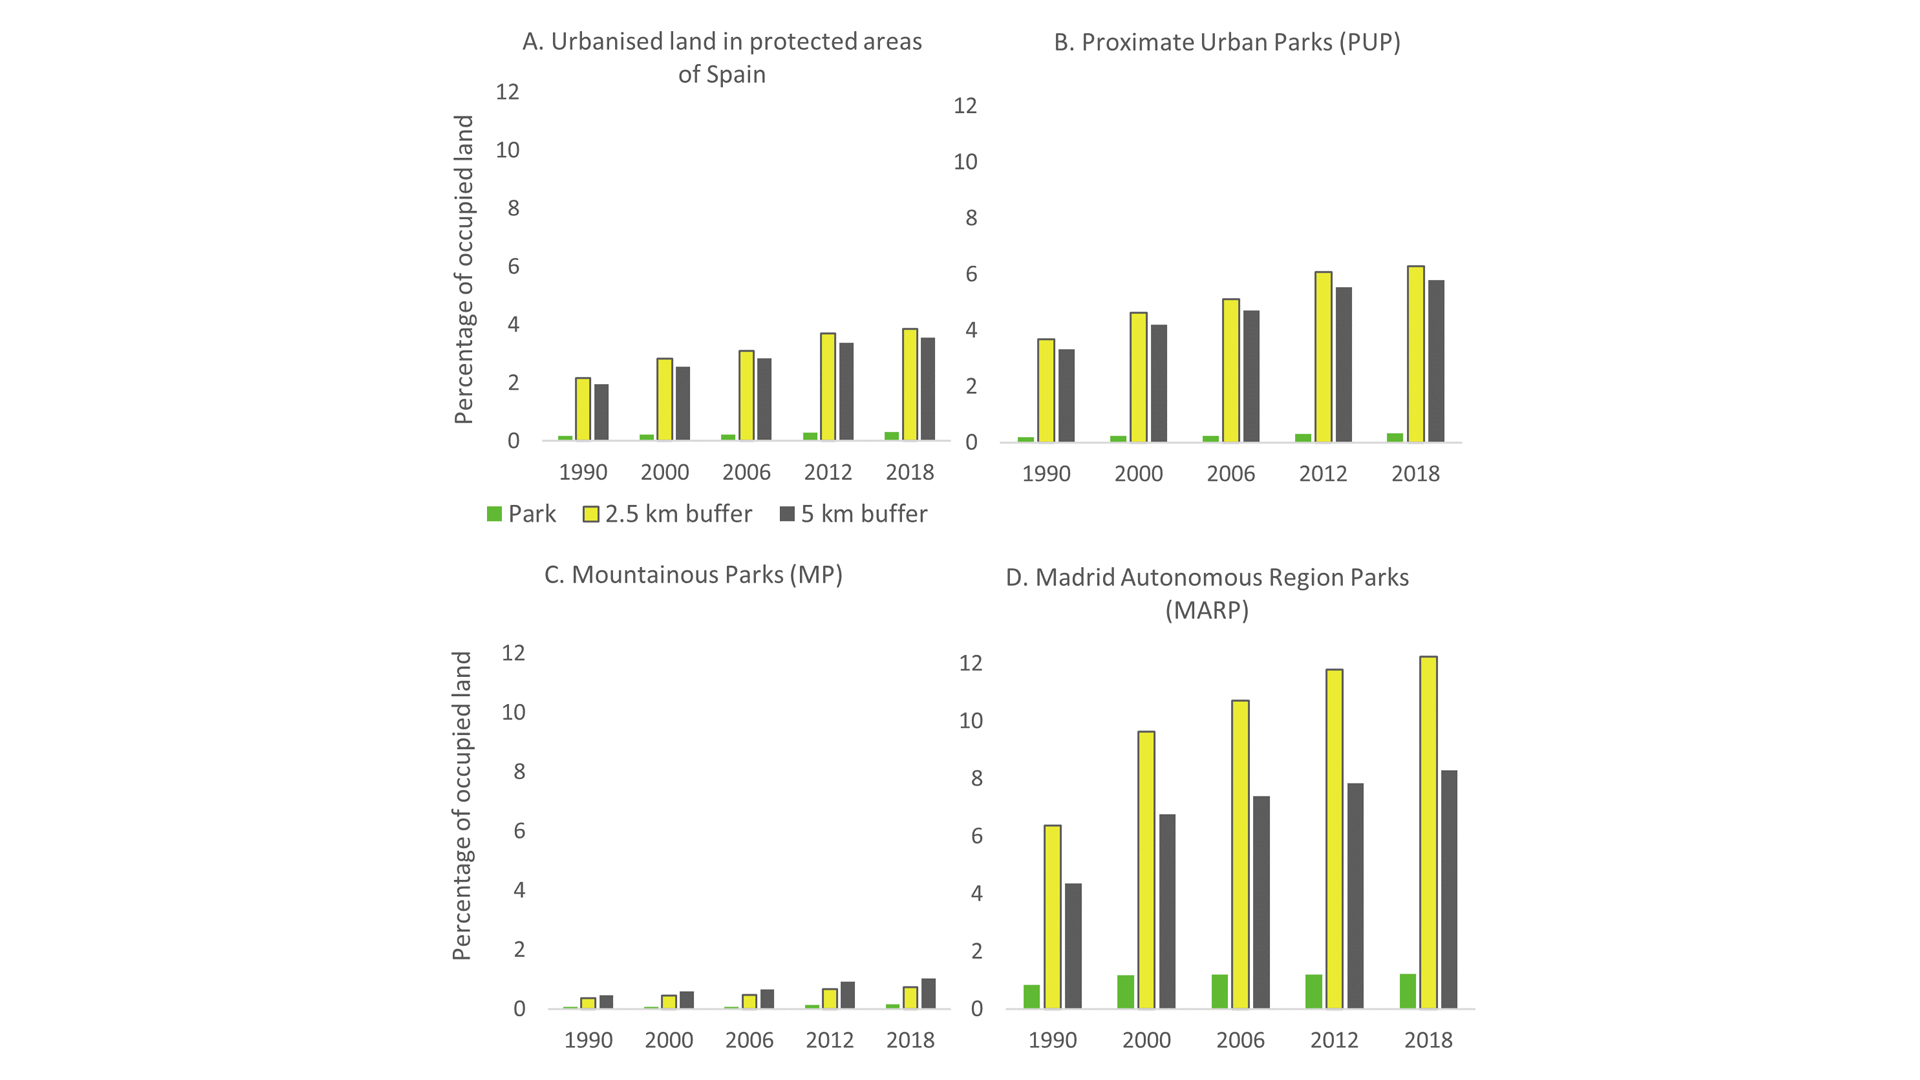 Gráficos que muestran el porcentaje de superficie urbanizada dentro de las áreas protegidas analizadas (verde) en el anillo de 2,5 km (amarillo) y en el anillo de 5 km (gris). 